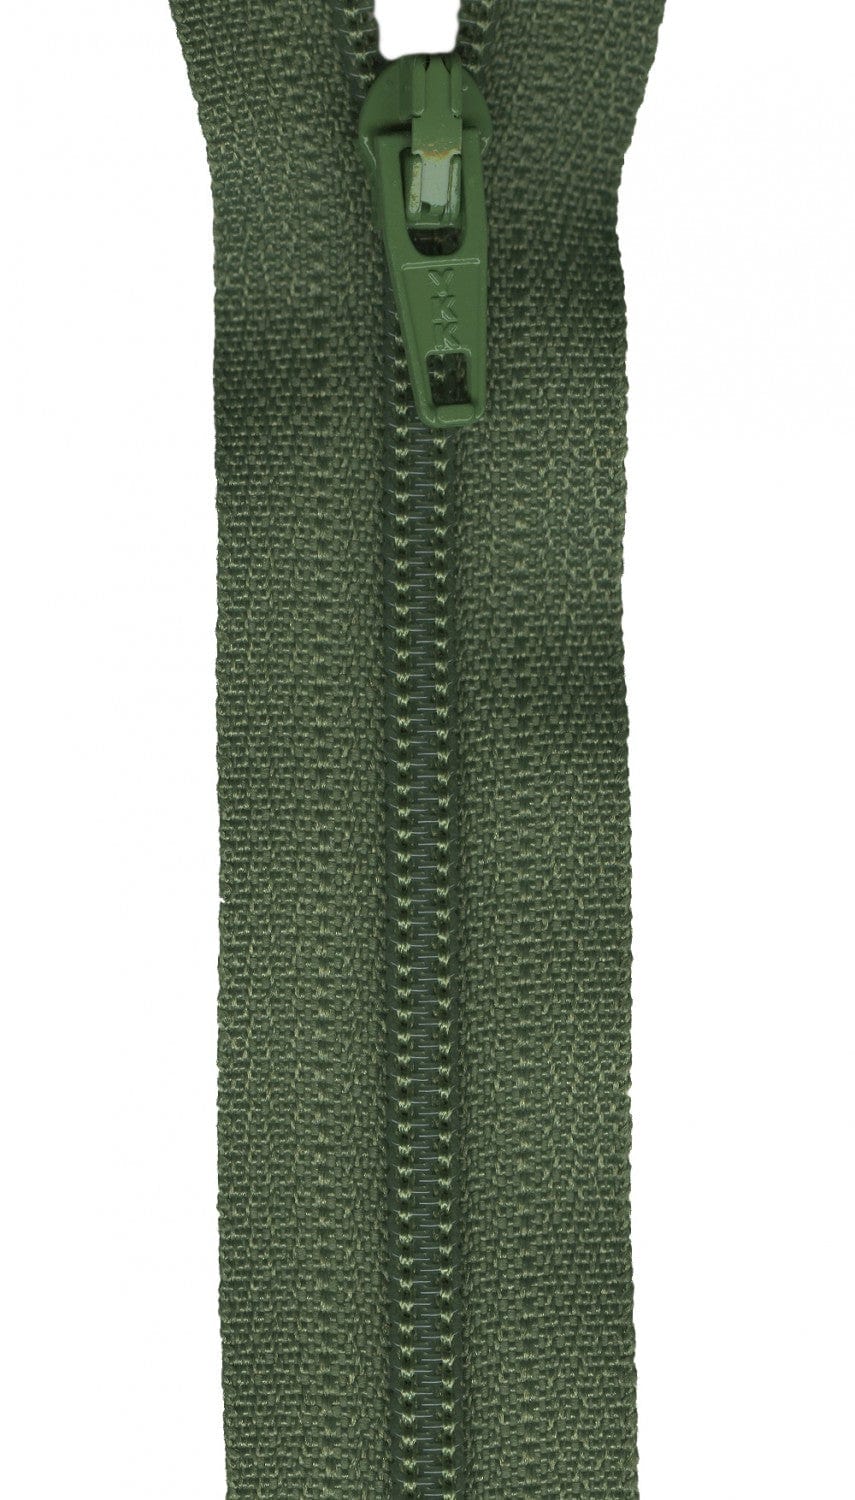 Ziplon Regular Zipper in Olive Green